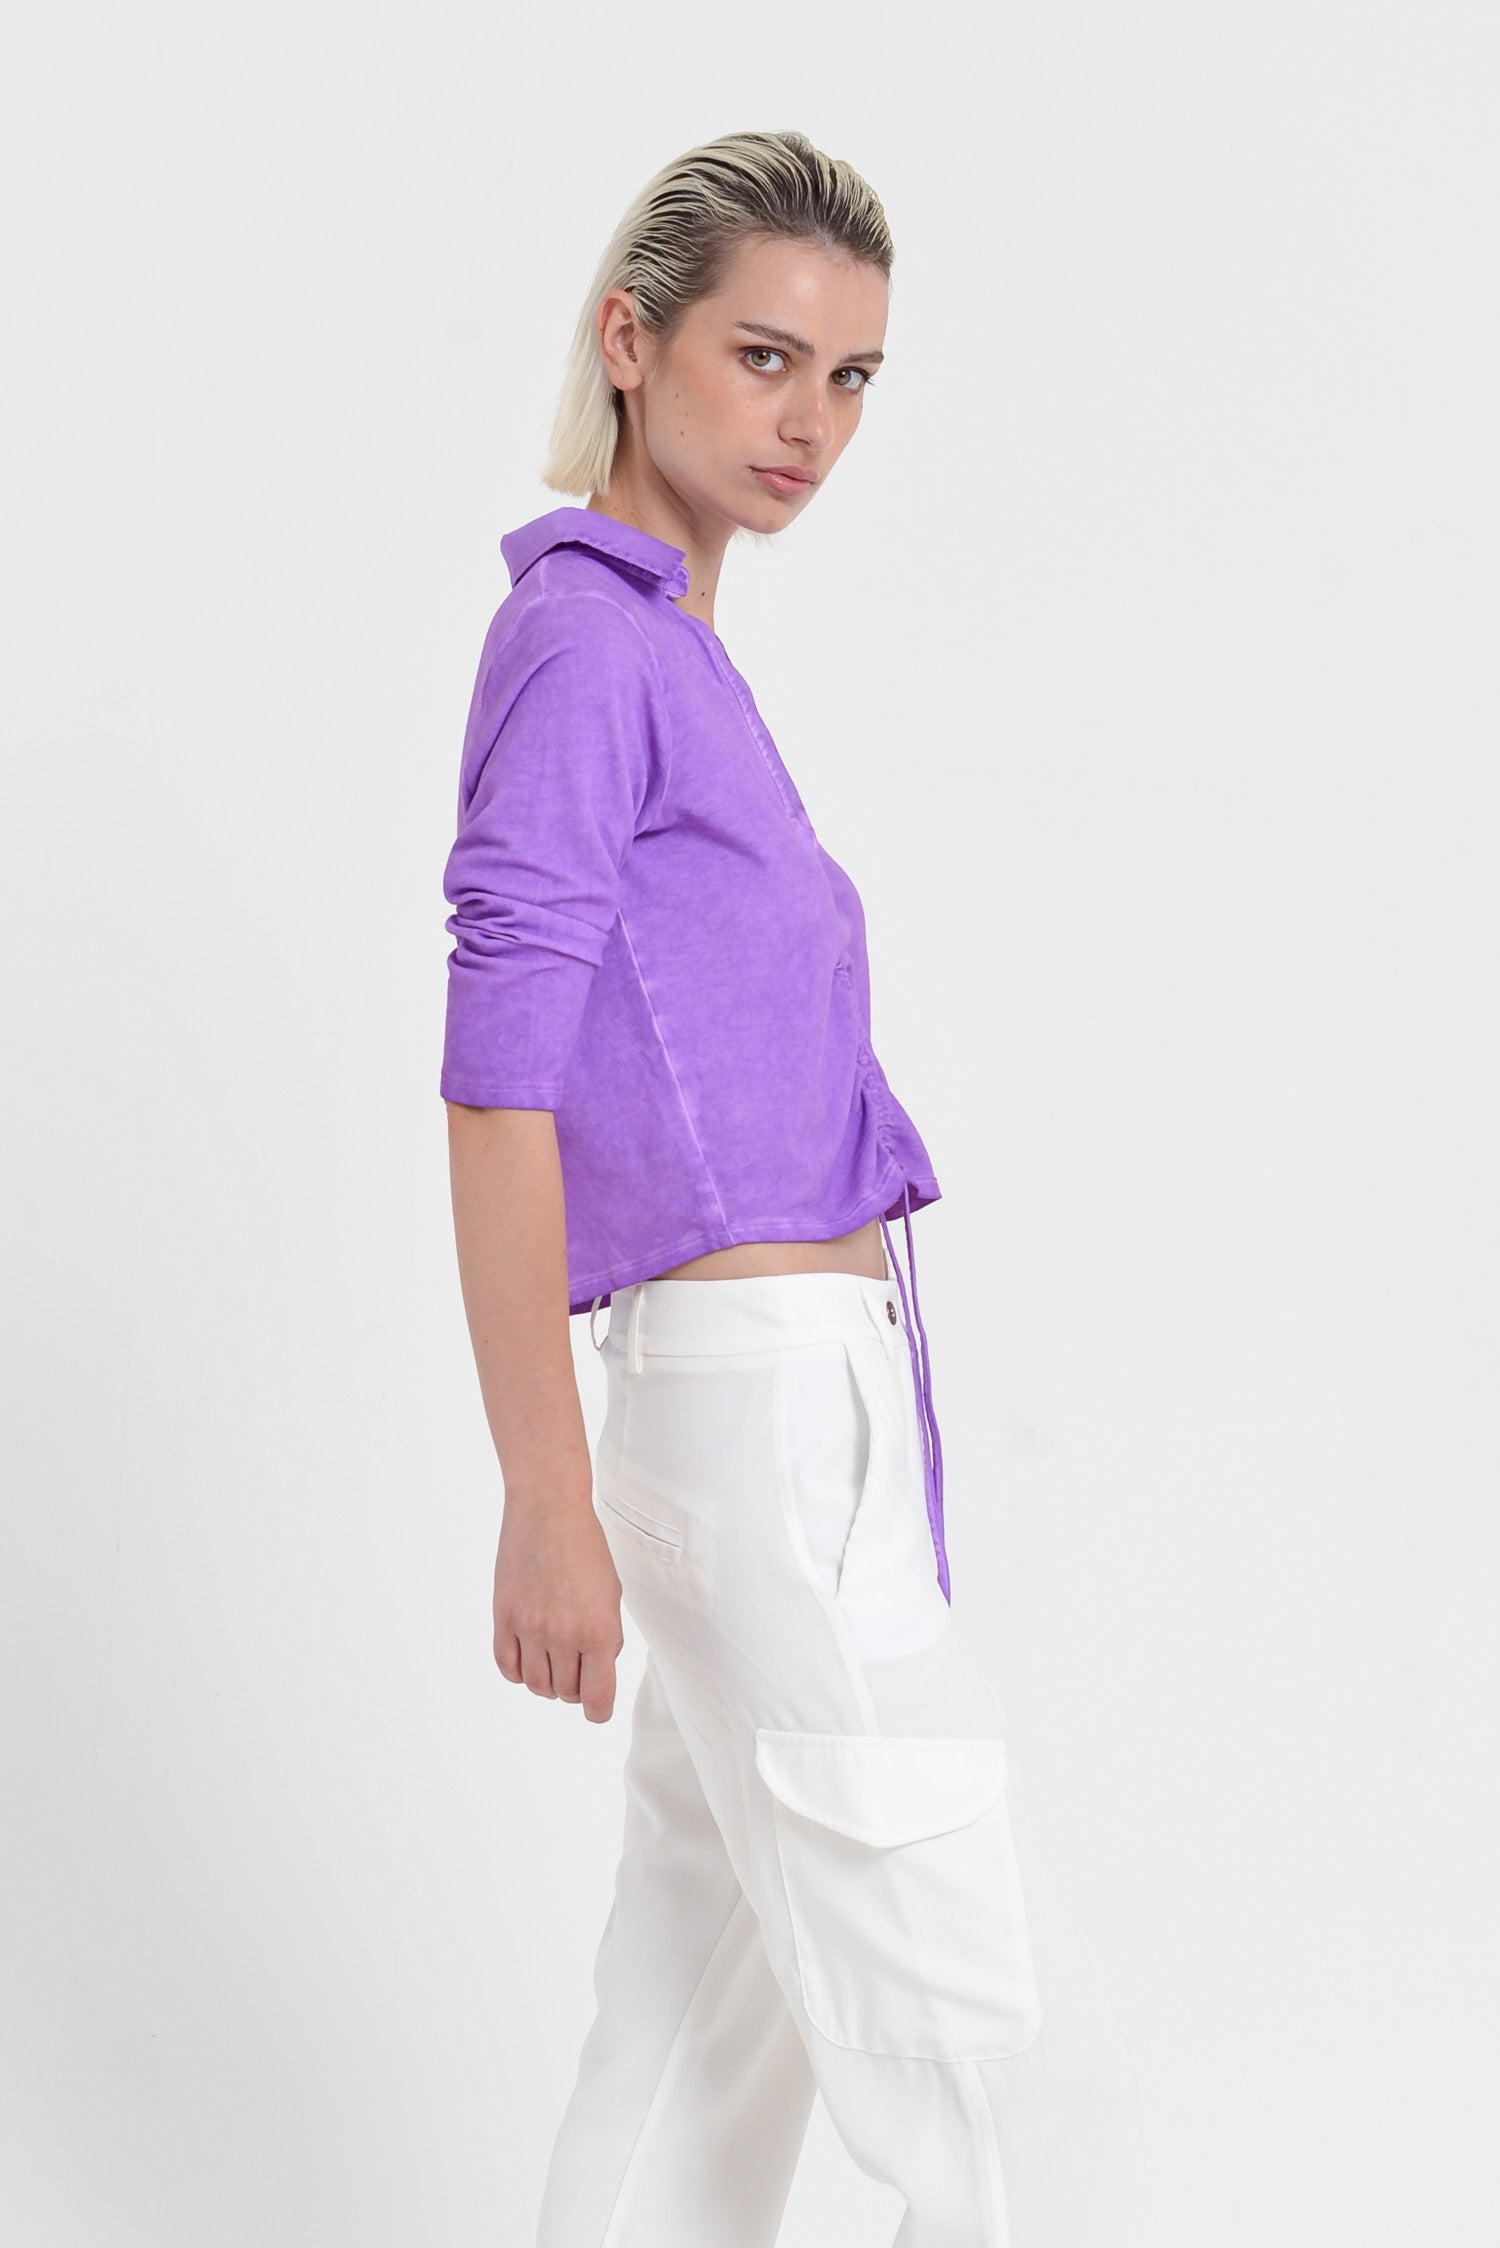 Menton Polo - Women's Short Sleeve Pique Polo Shirt - Morado